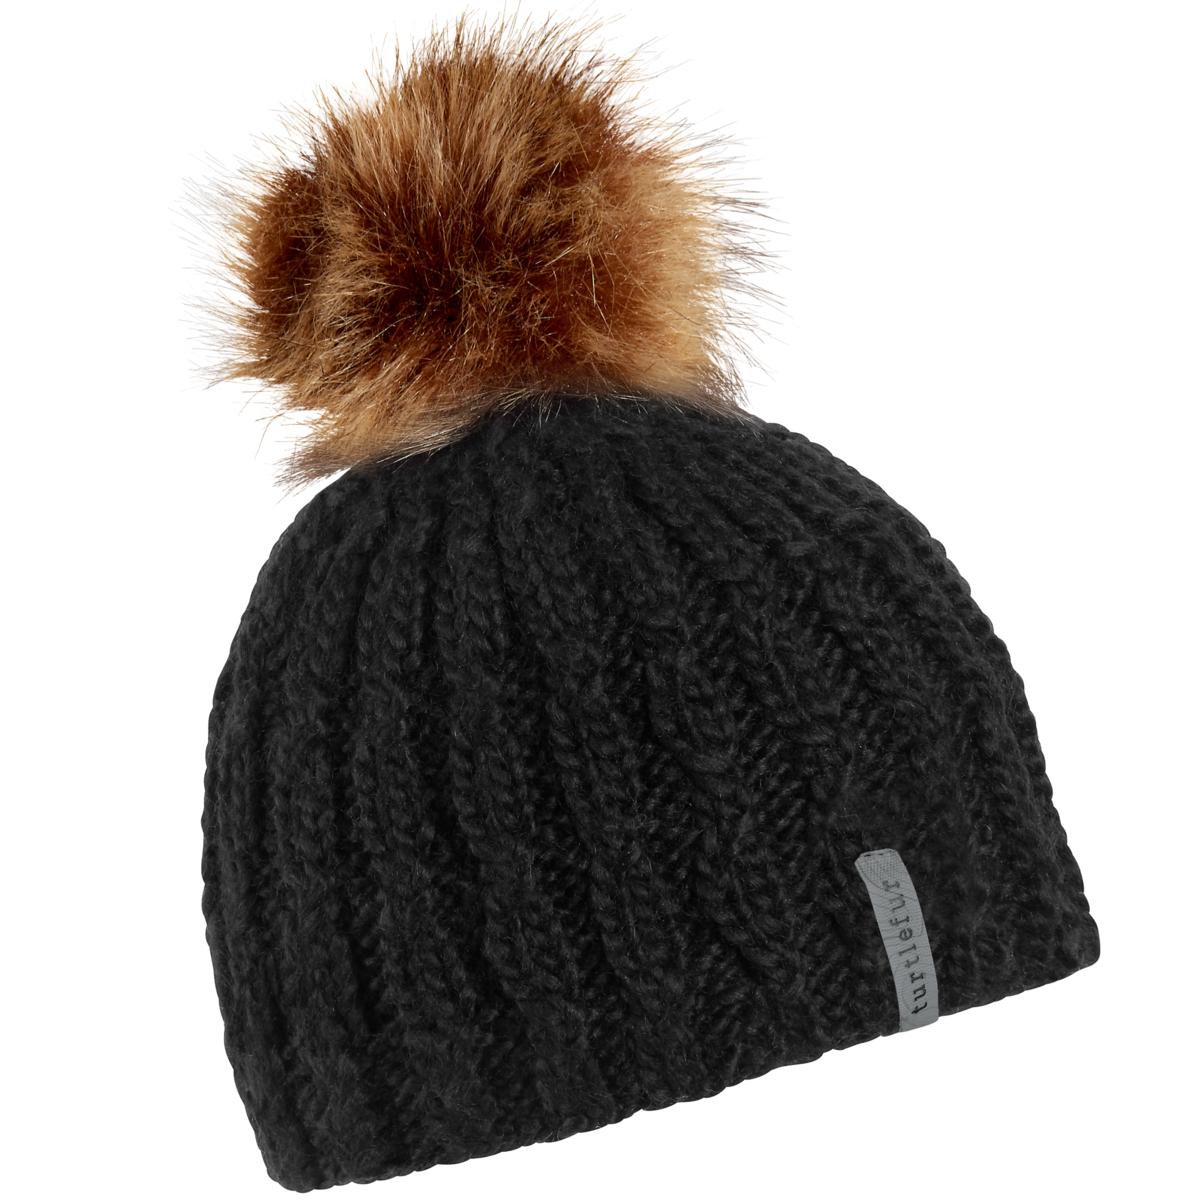 Turtle Fur Fifi Women's Merino Wool Faux Pom Winter Hat Black